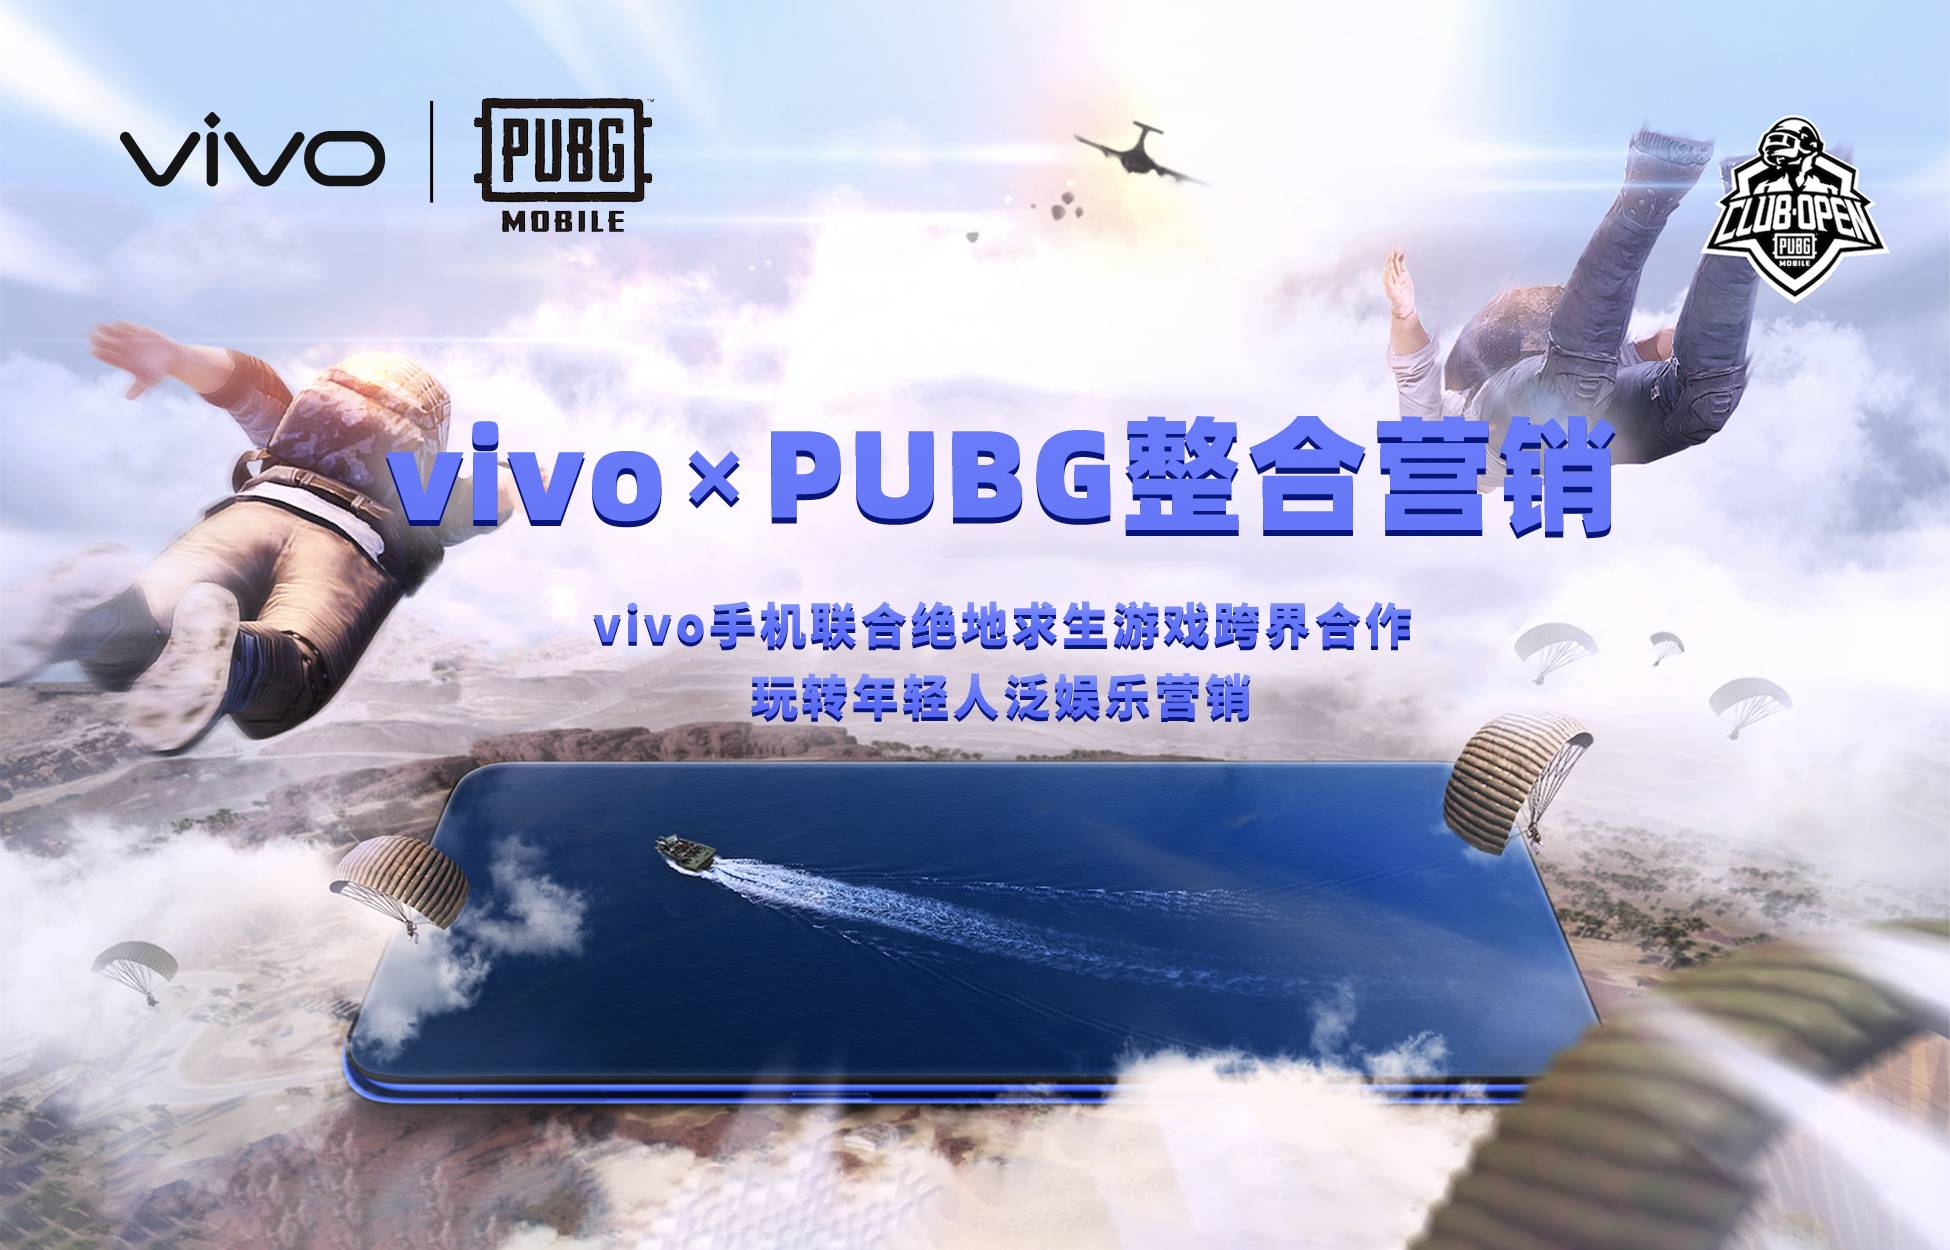 vivo×PUBG整合营销  玩转IP数字化整合